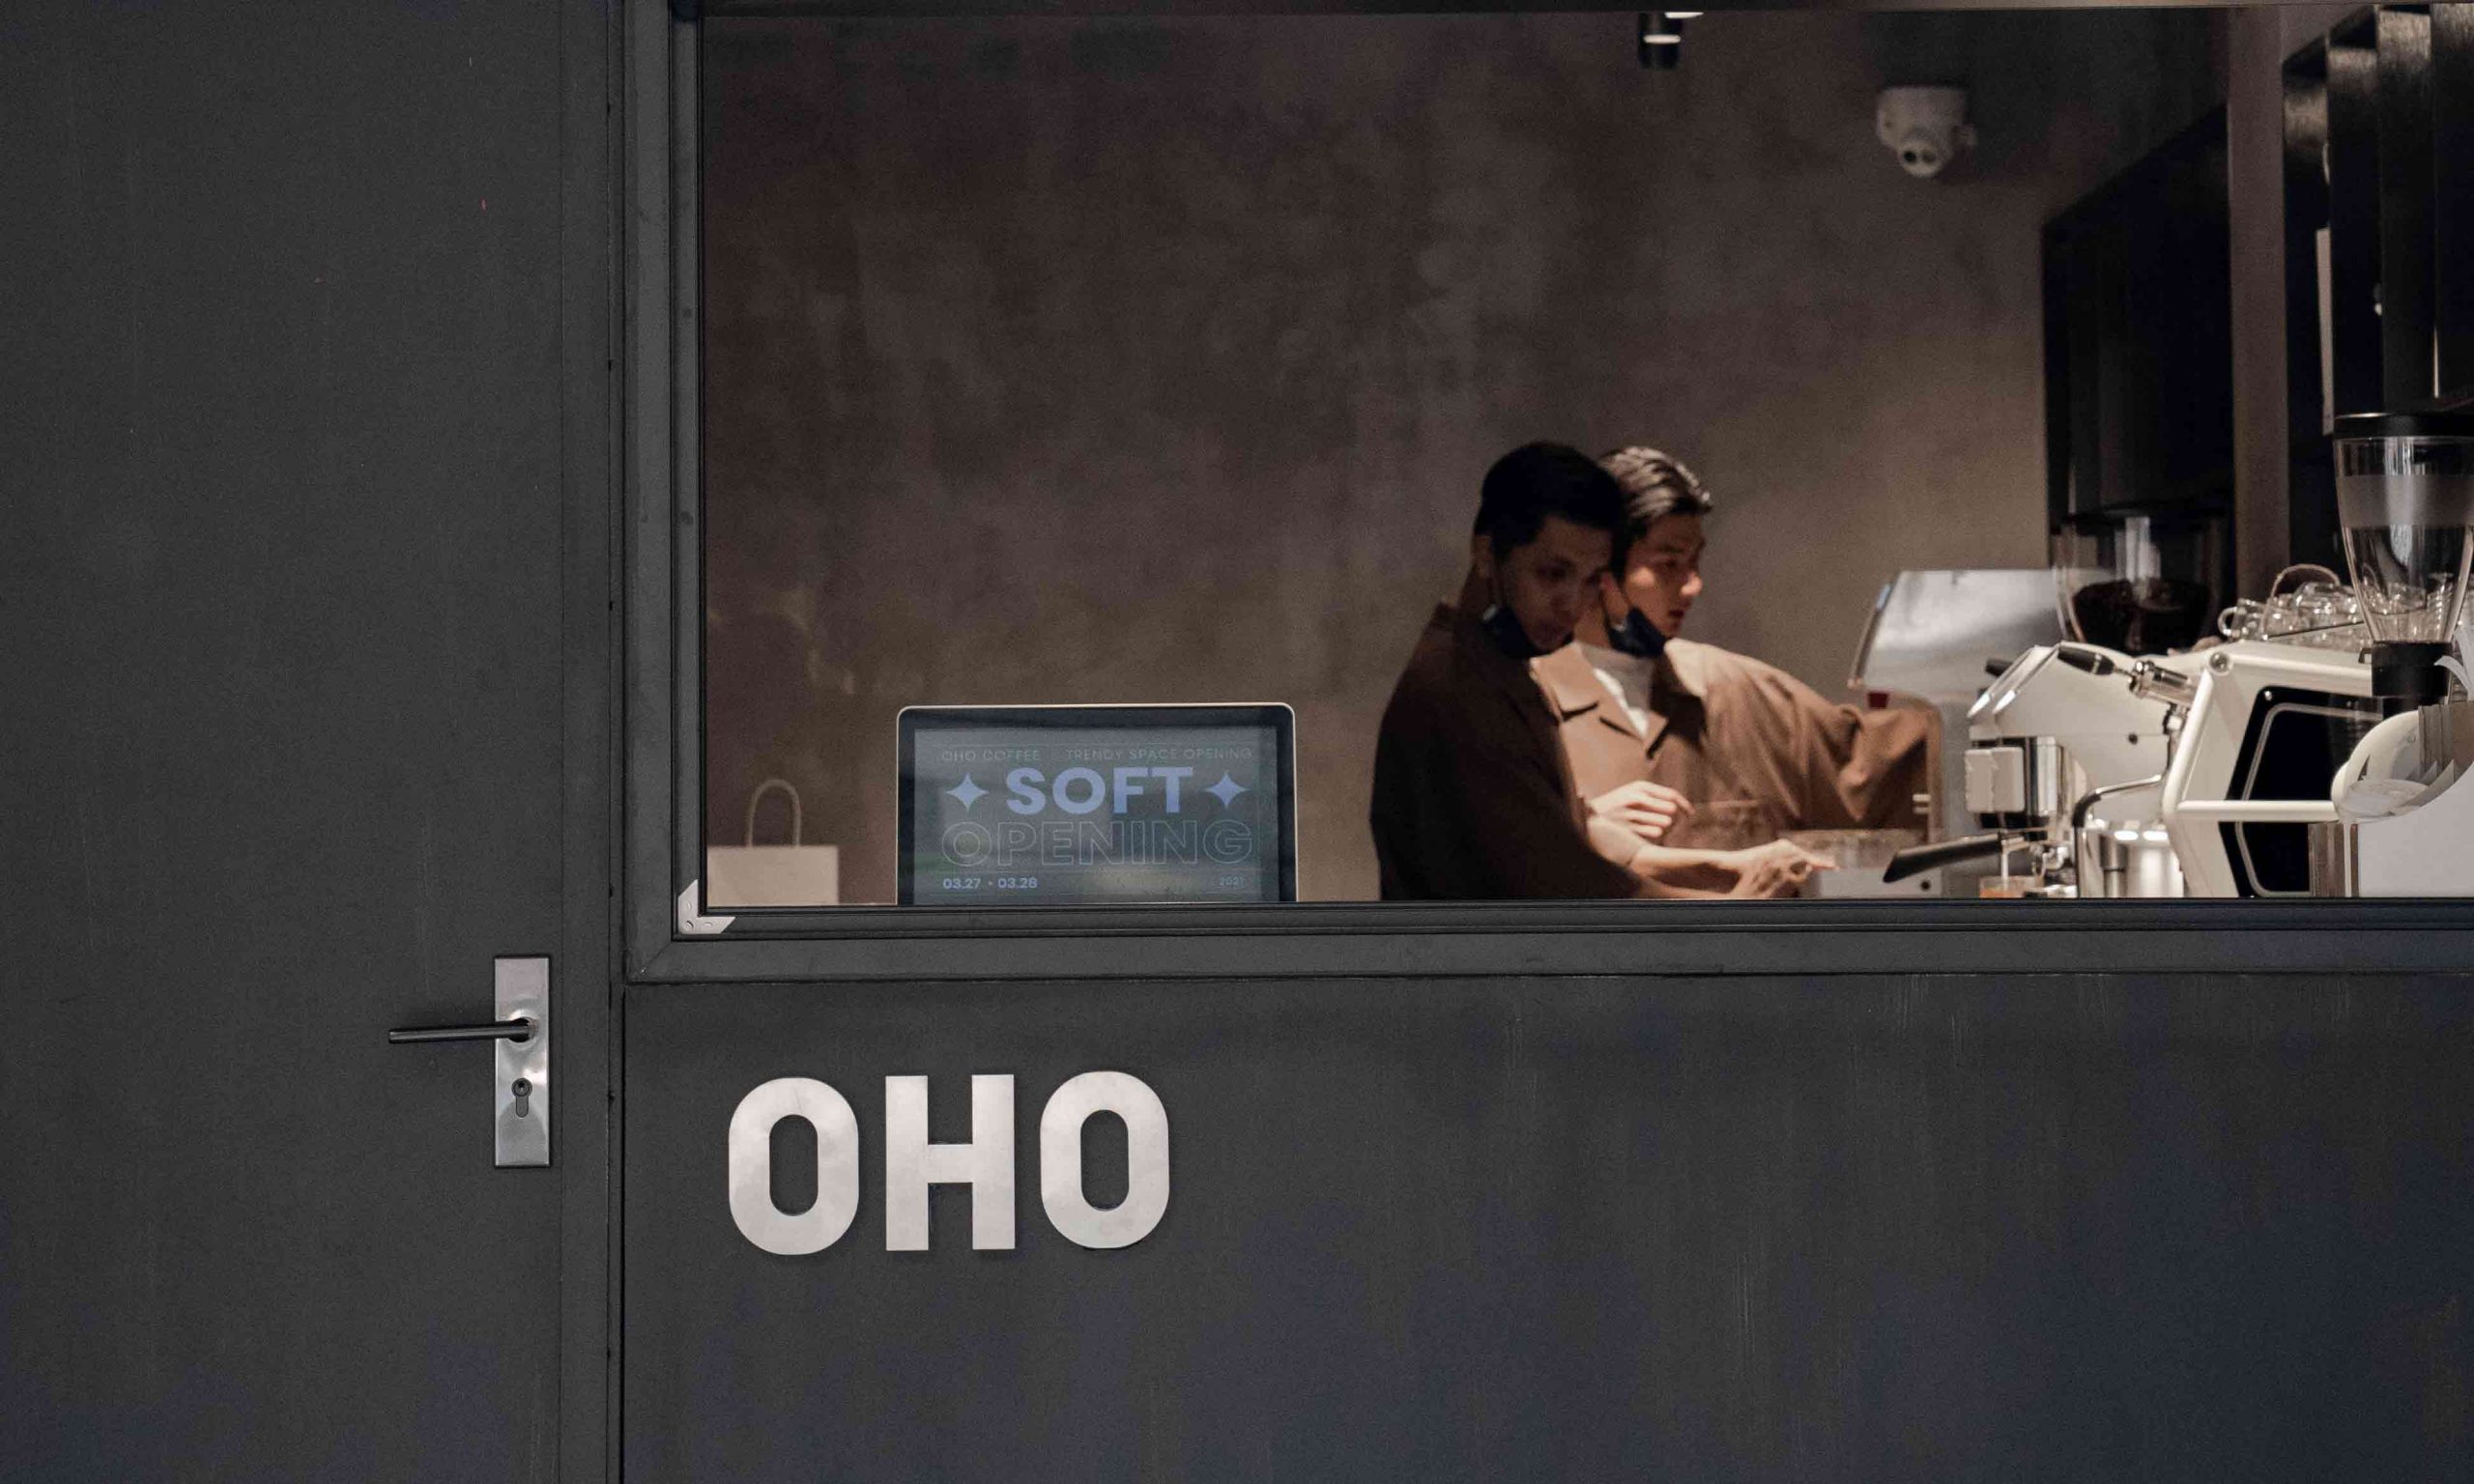 新晋潮流品牌 OHO 打造的 OHO COFFEE 咖啡店正式开业